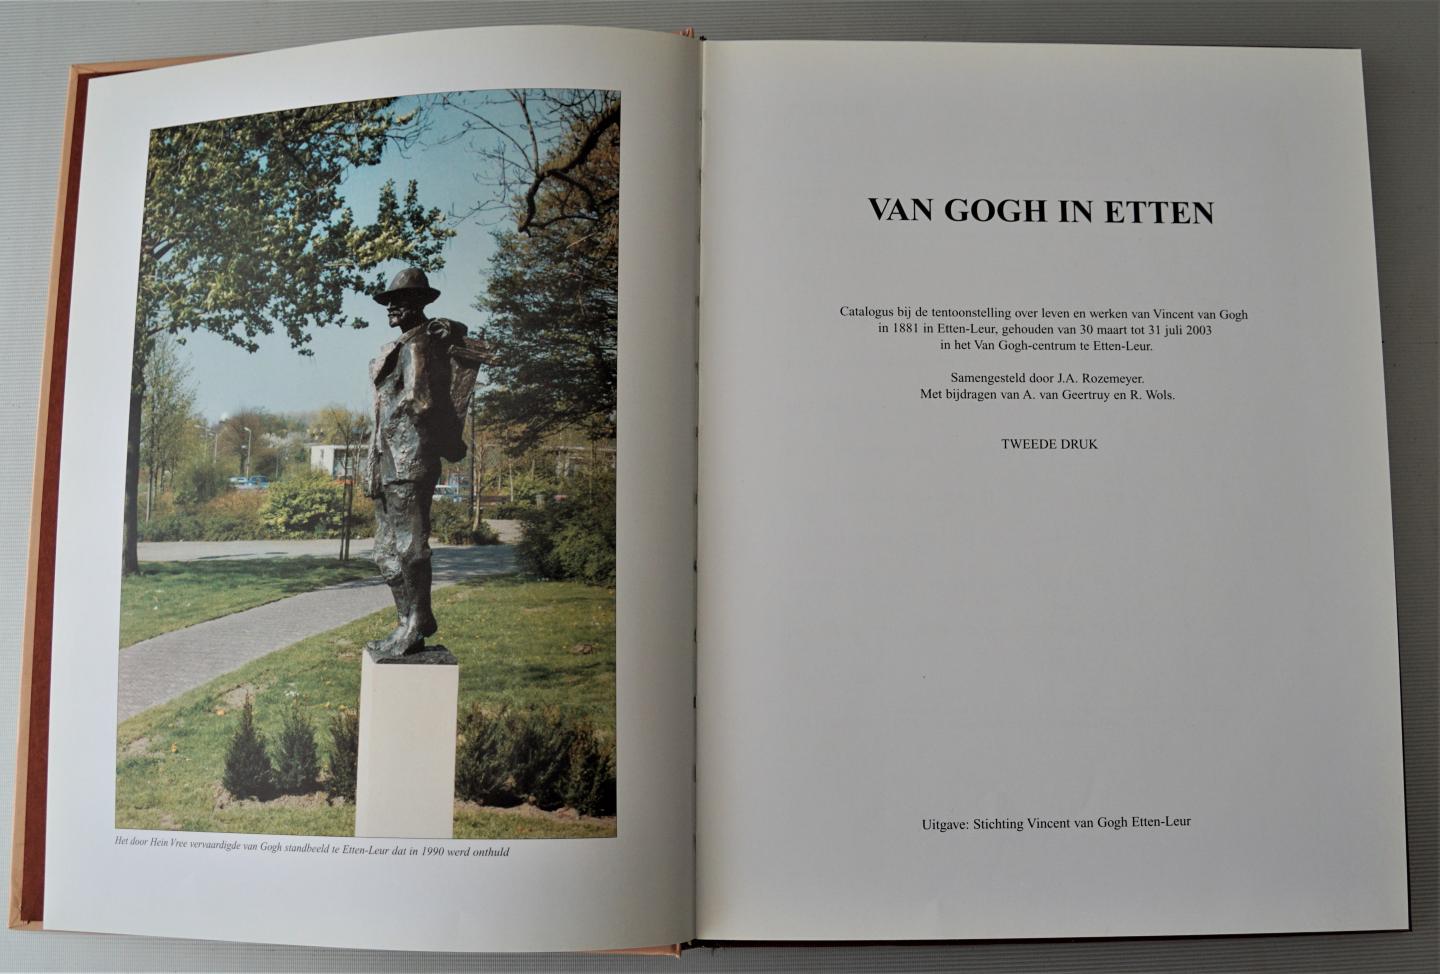 Rozemeyer, J.A. Geertruy, A. van en Wols, R. - Van Gogh in Etten